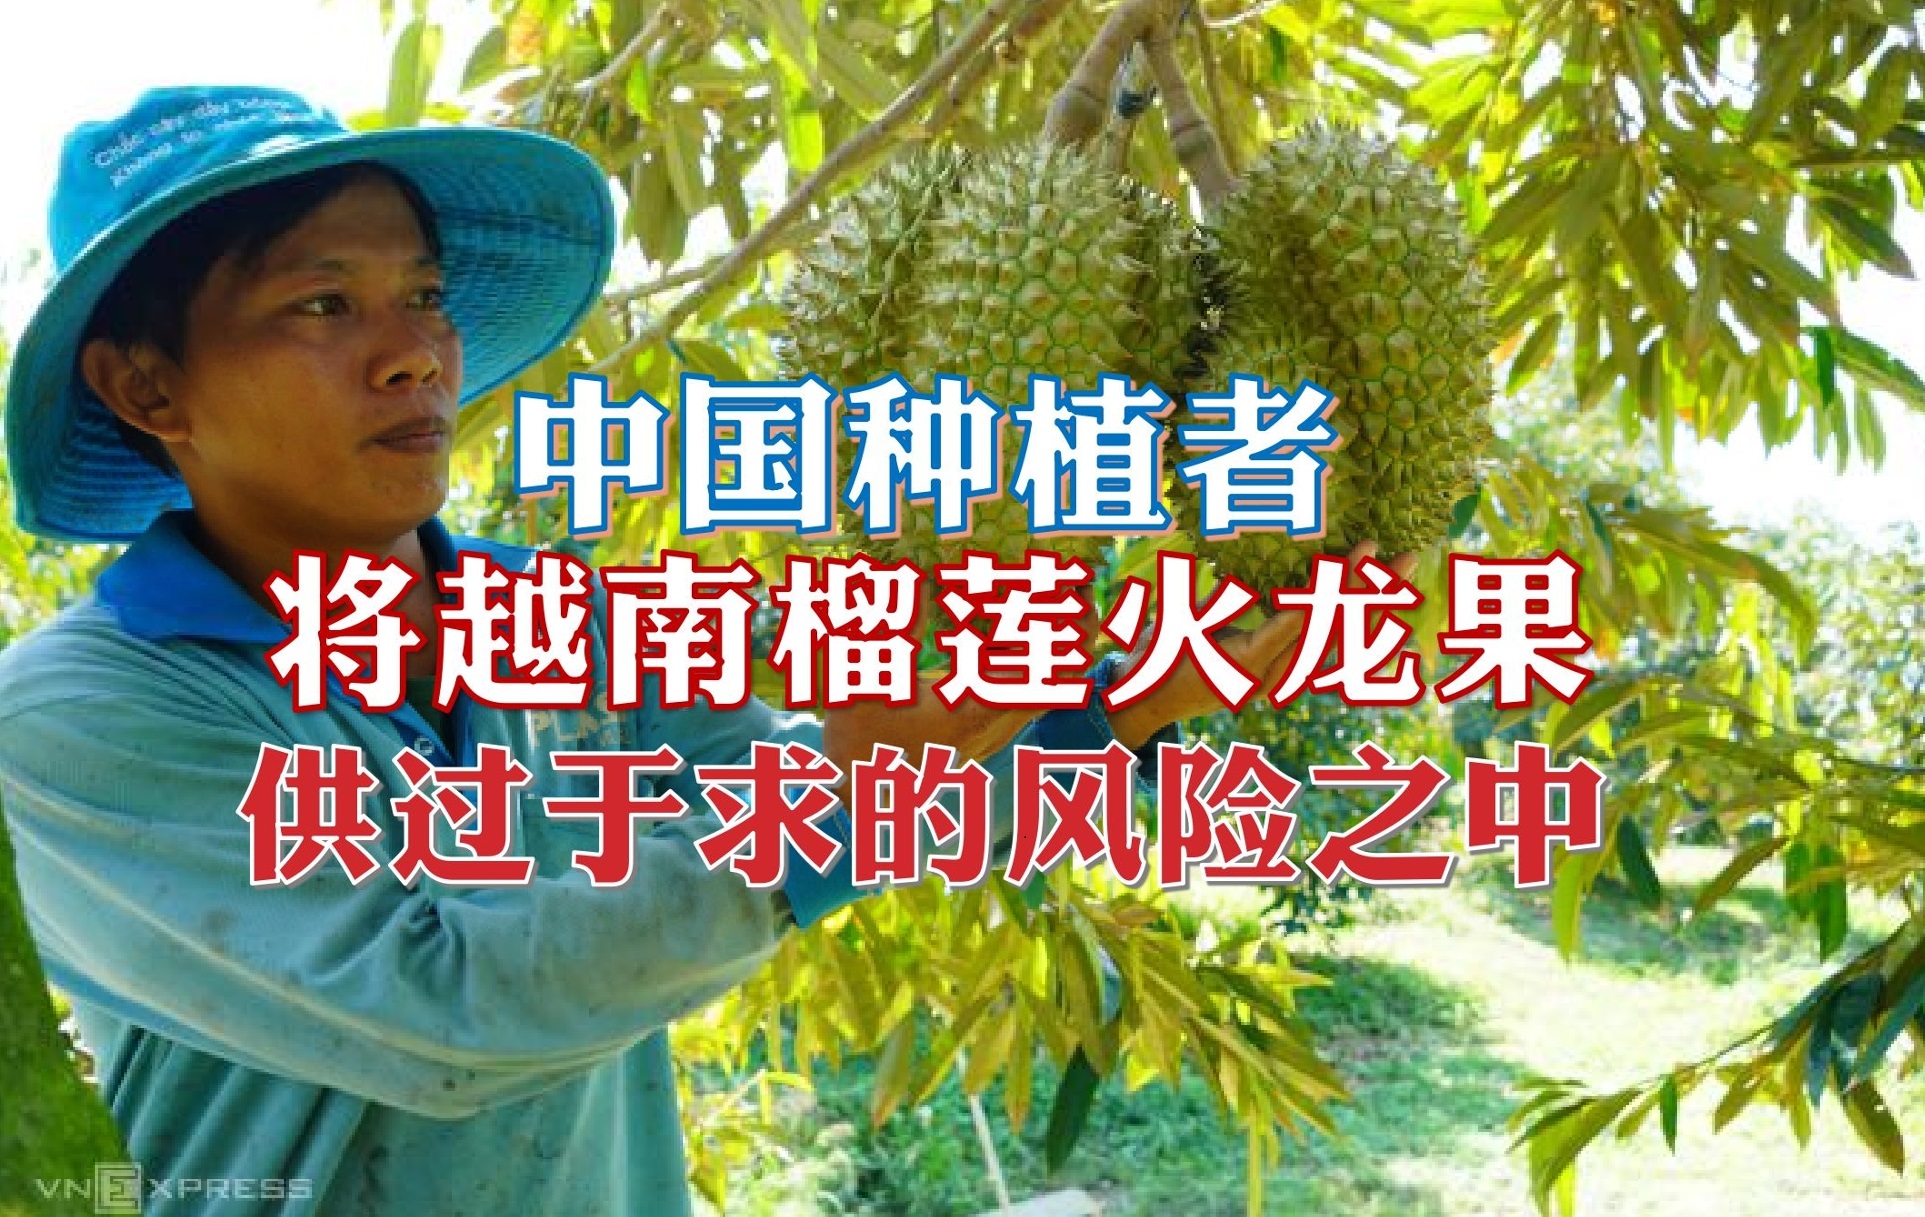 中国种植者将越南榴莲火龙果 置于供过于求的风险之中 - 农牧世界